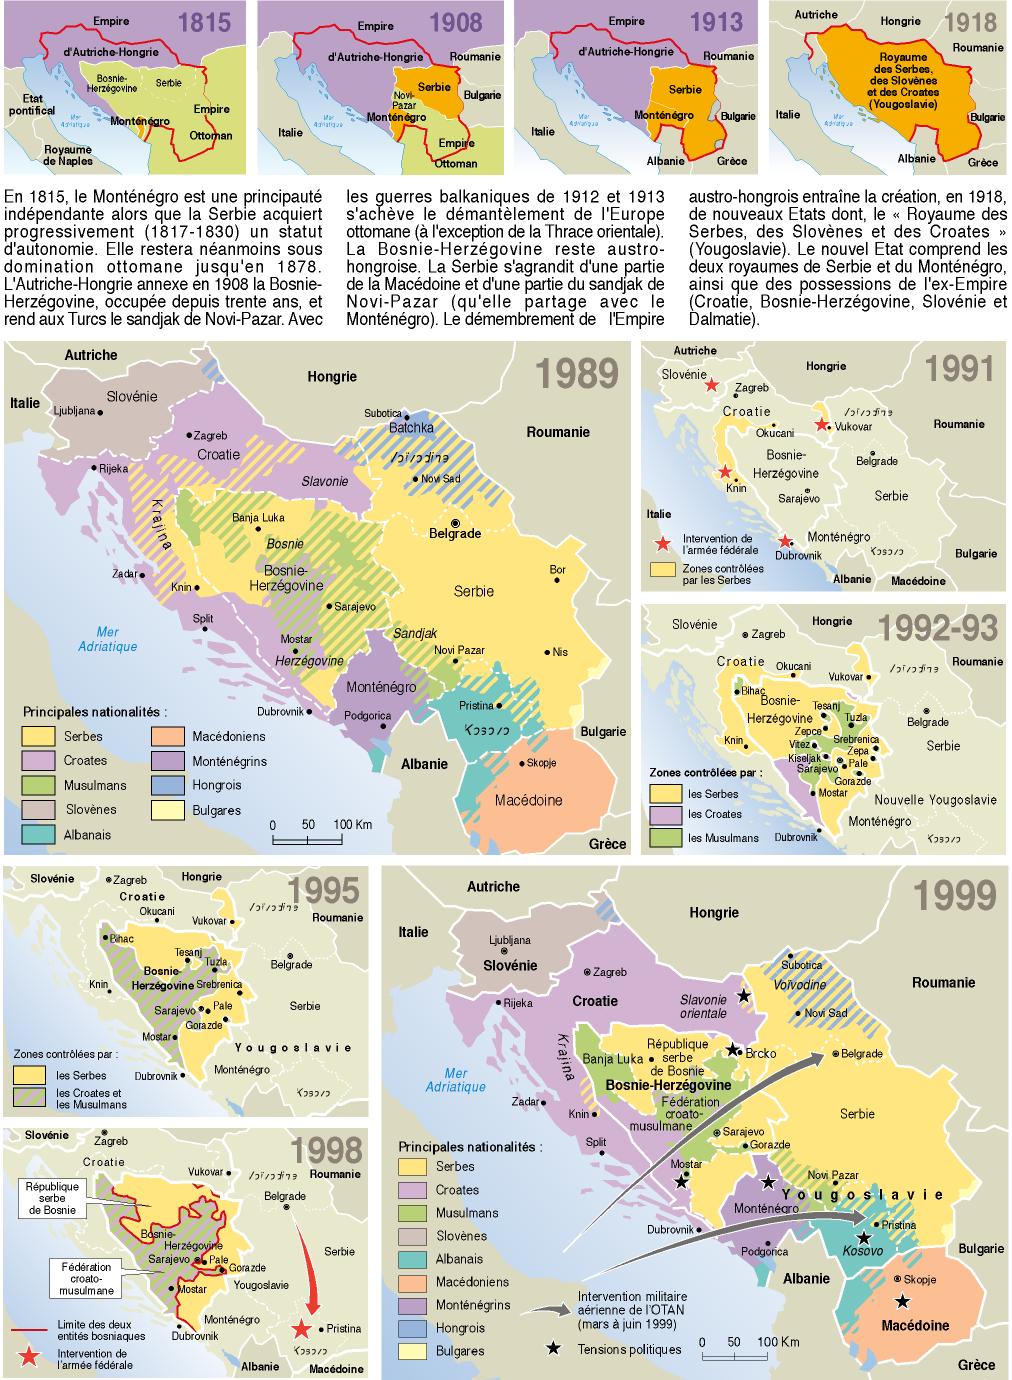 Les guerres en Yougoslavie (cartographie du Monde Diplomatique)